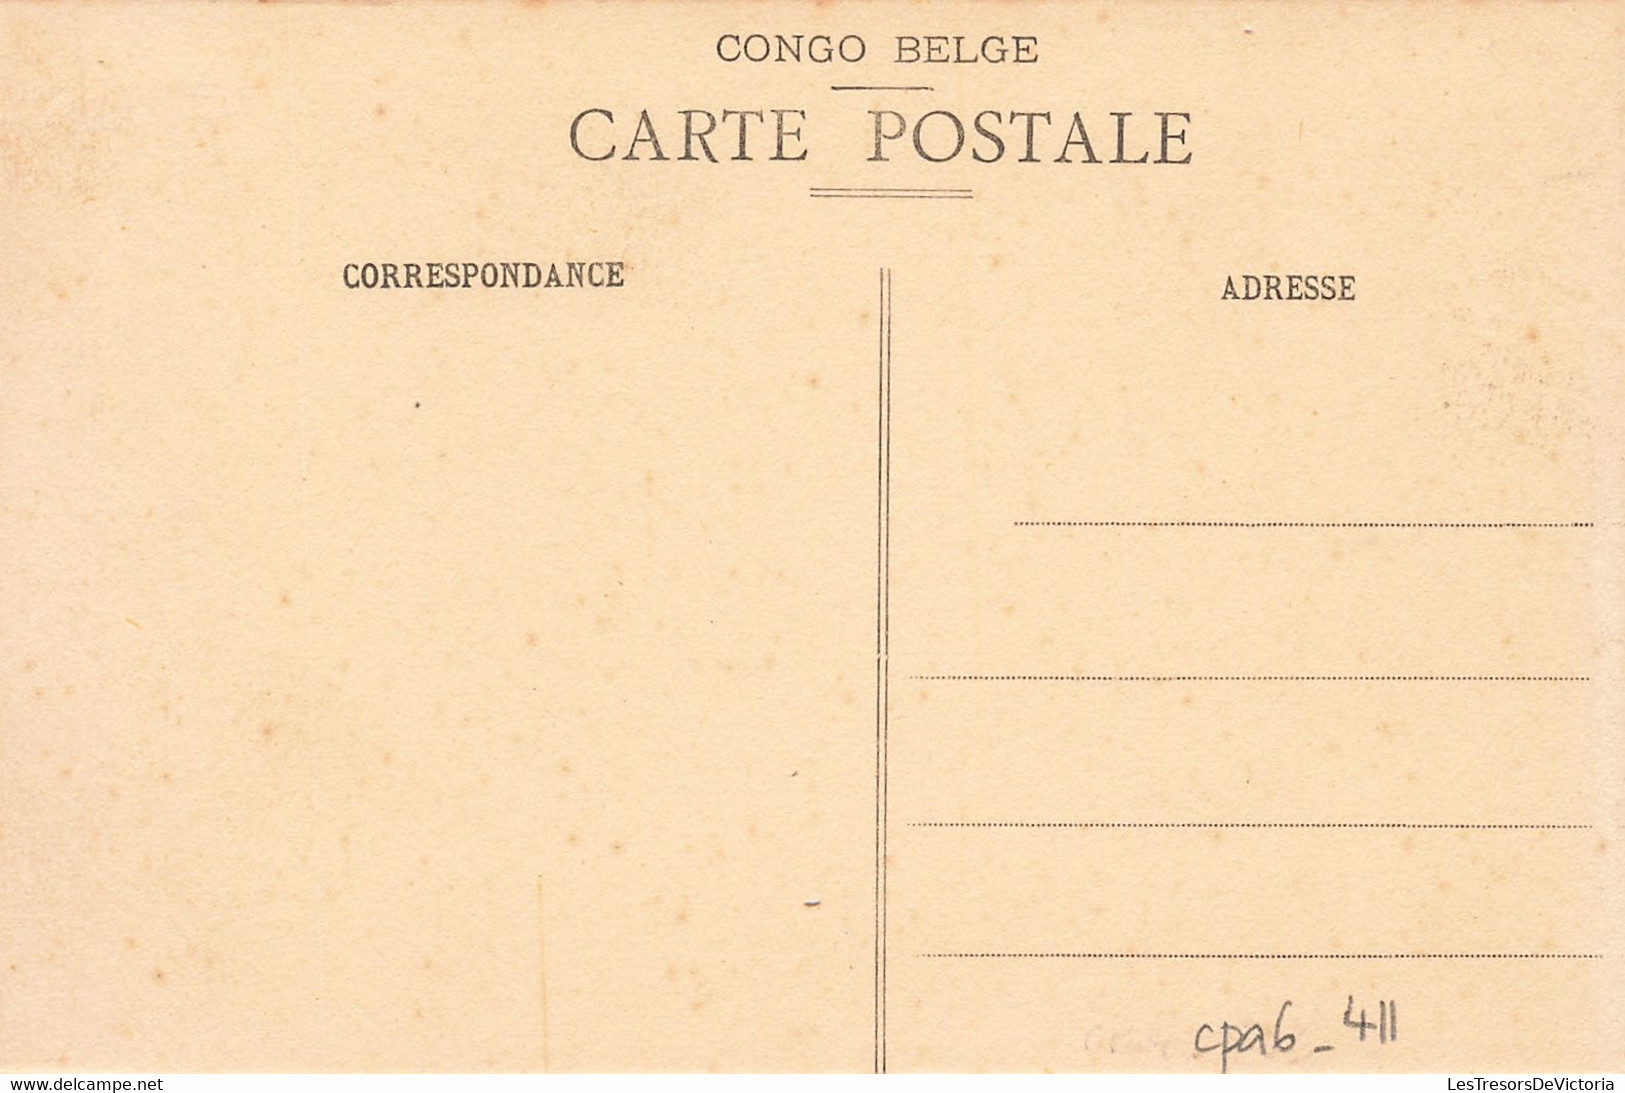 Congo - Indigène N'Gombé - ( Bangala) - Scarification Sur Le Visage - Carte Postale Anciene - Belgian Congo